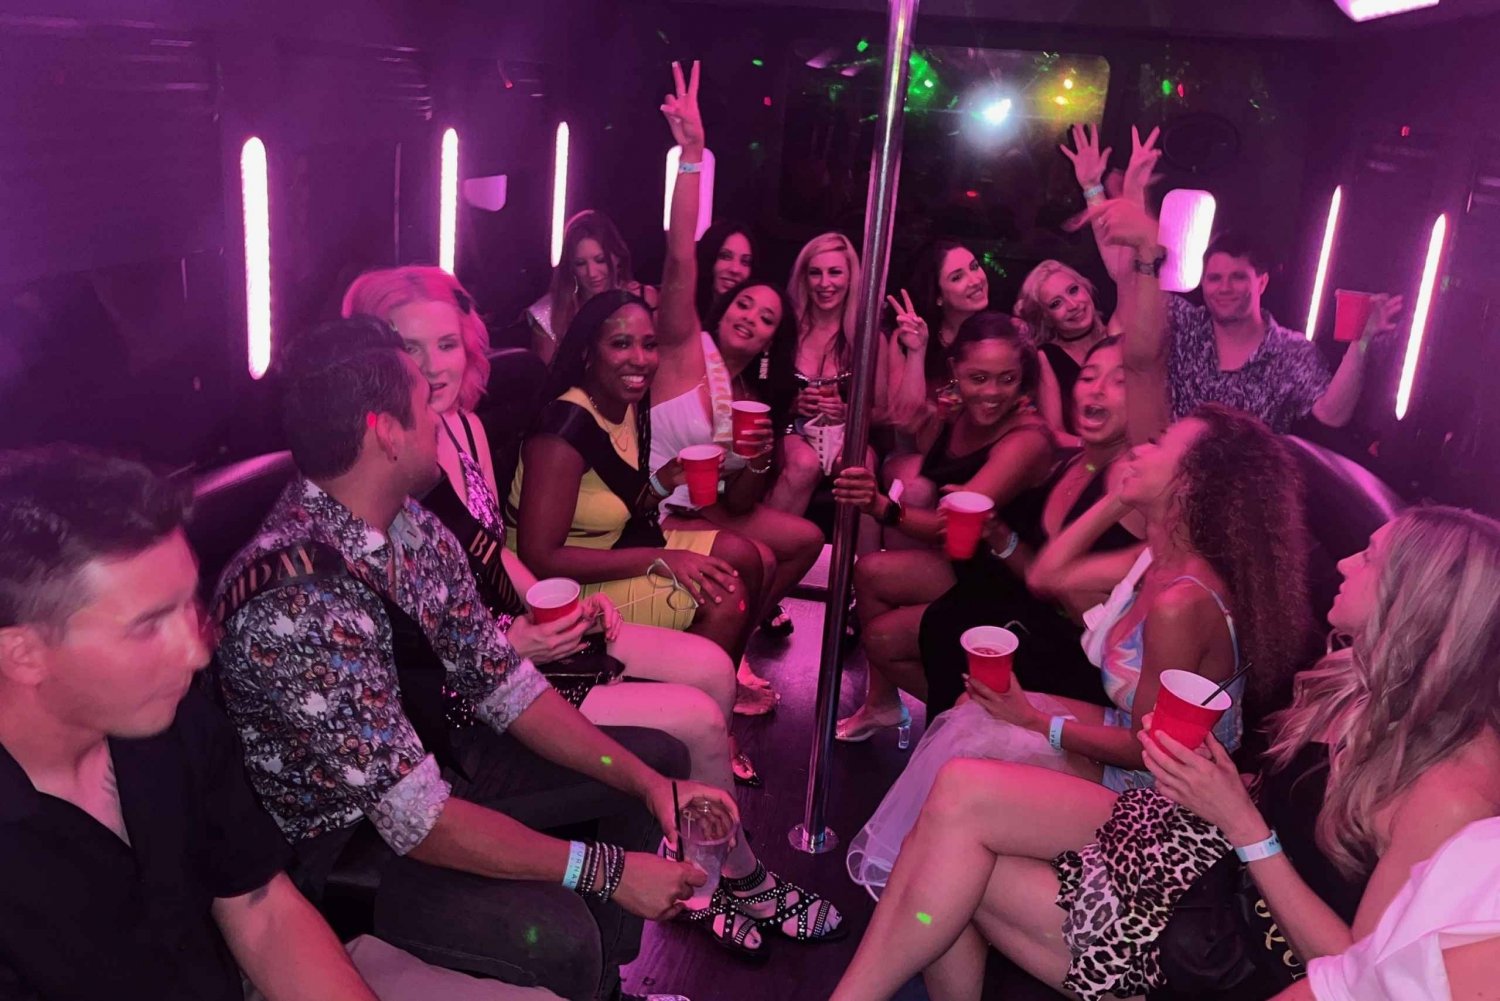 Las Vegas : Visite VIP des bars, boîtes de nuit et clubs de strip-tease